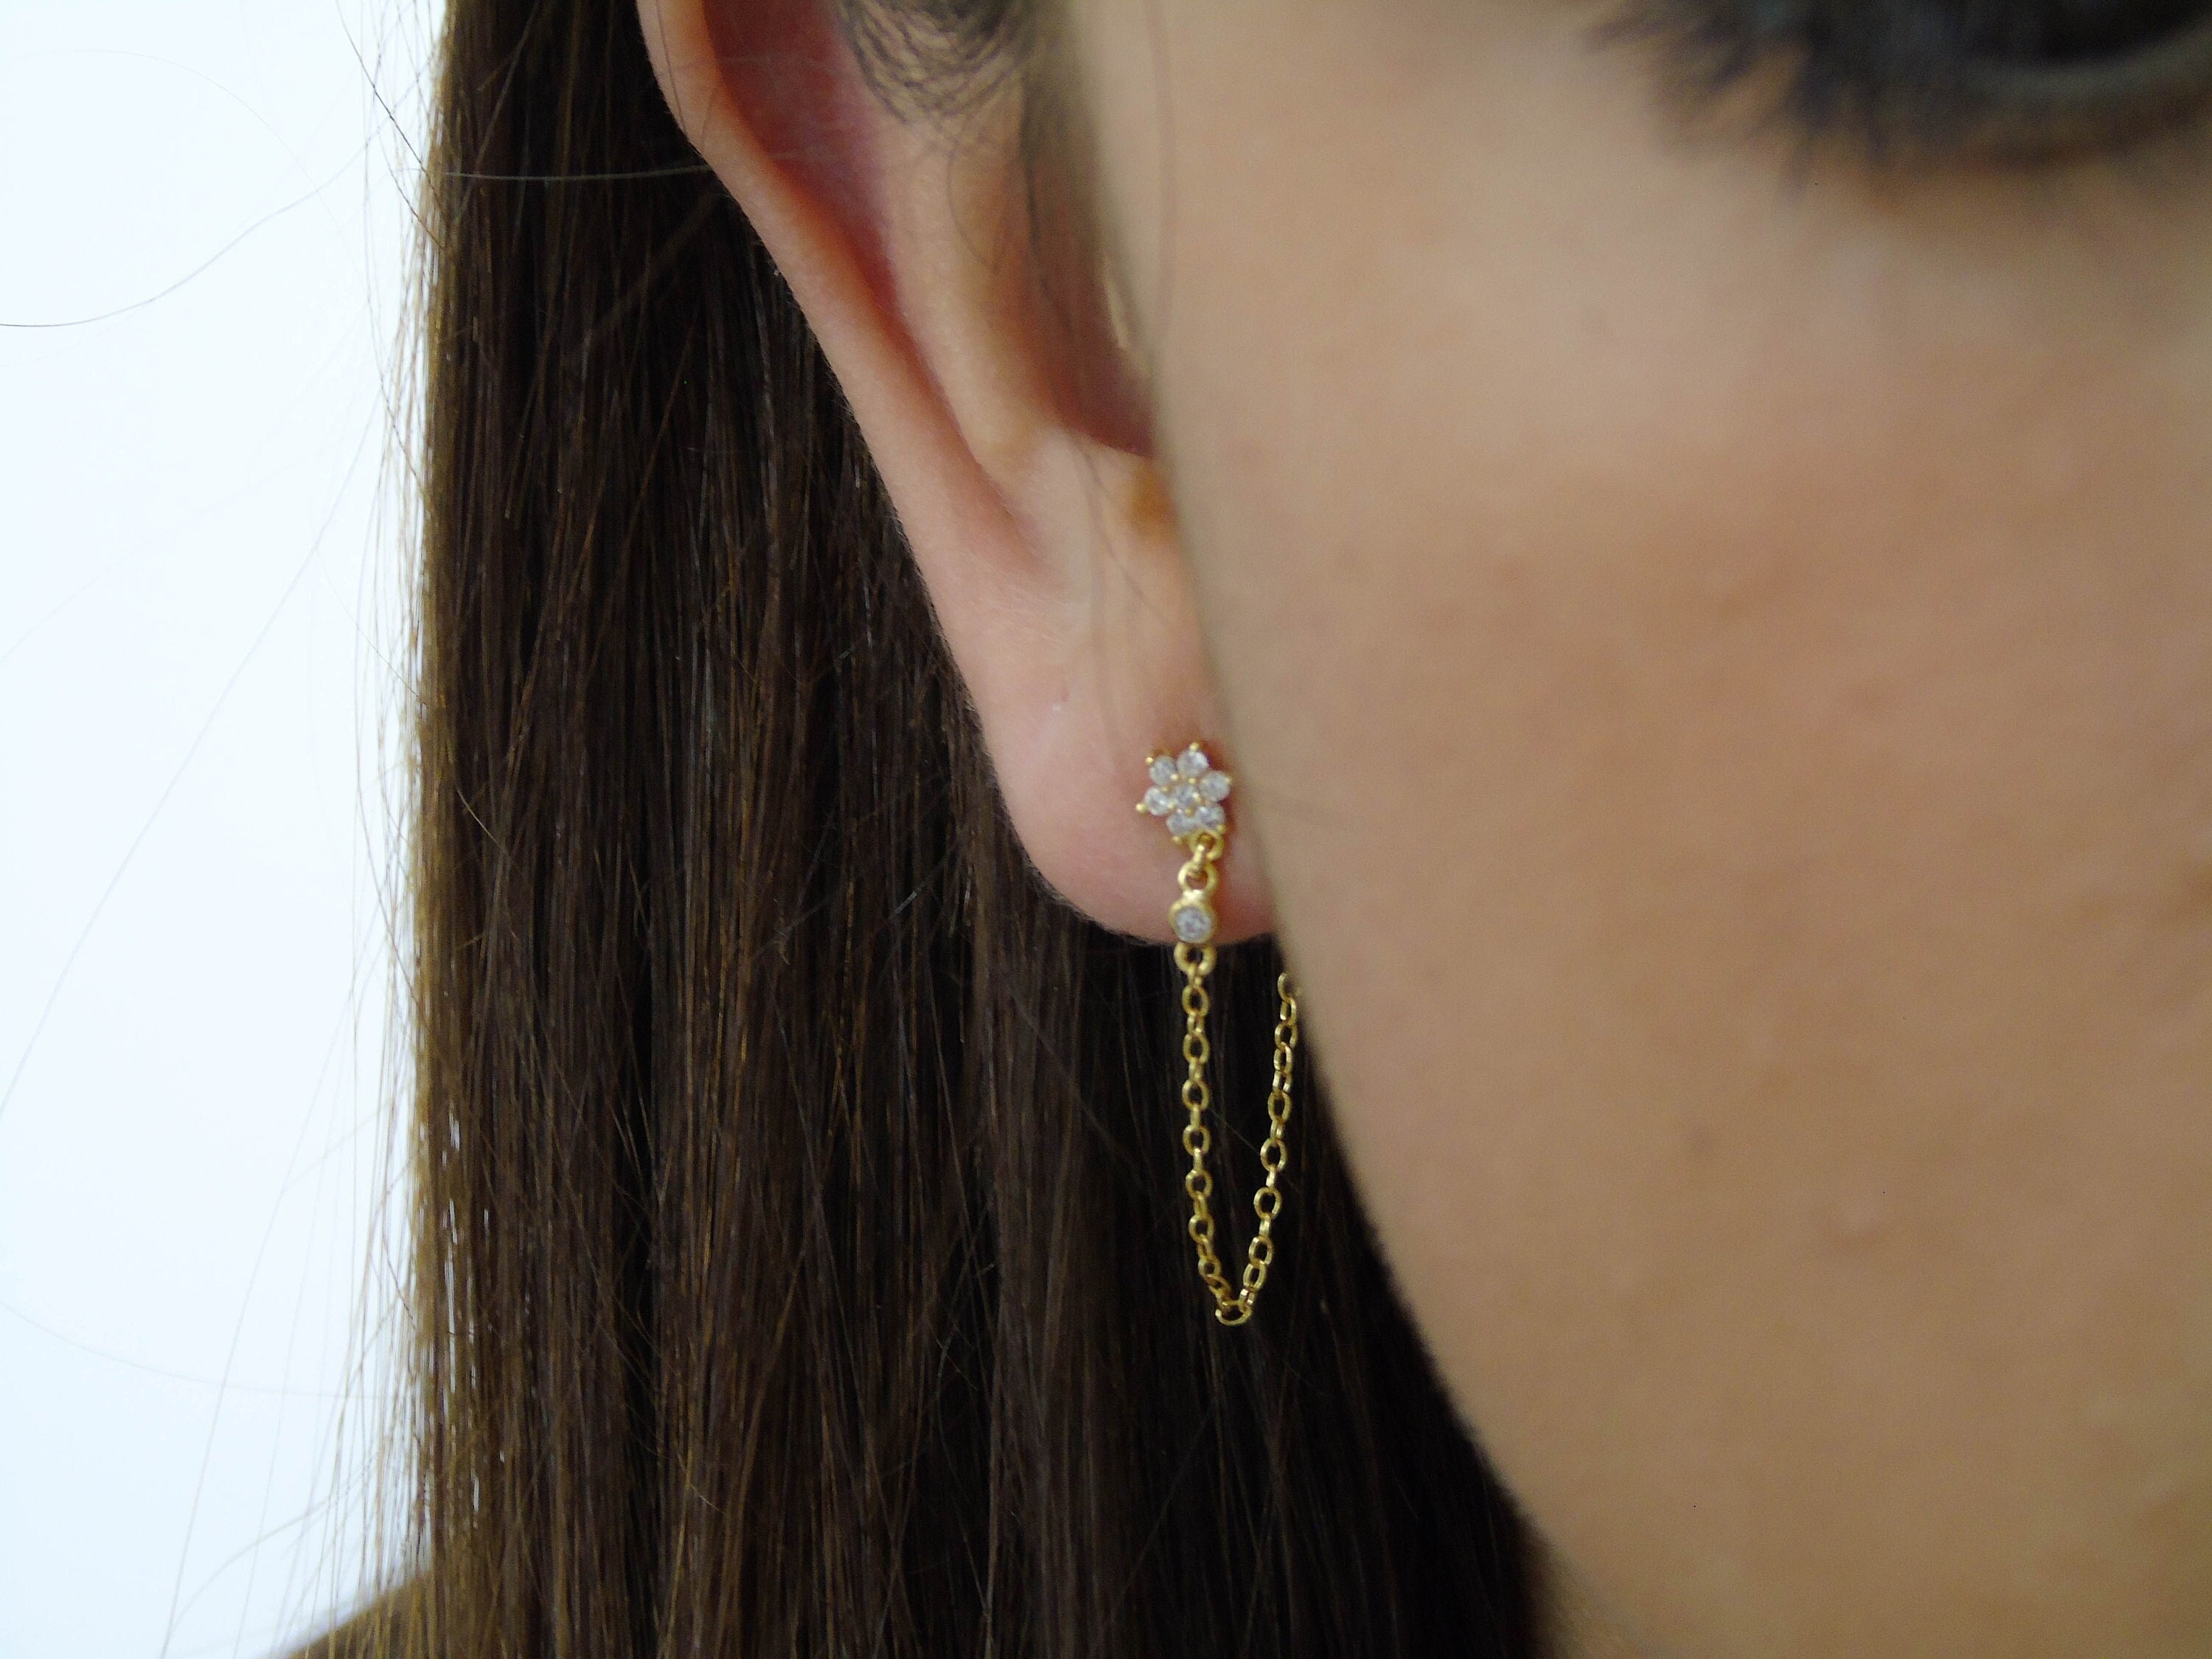 Chain Earrings, Cz Earrings, Gold Earrings, Minimalist Earrings, Dainty  Earrings, Dangle Chain Earring, Silver Earring, Silver Chain Earring 